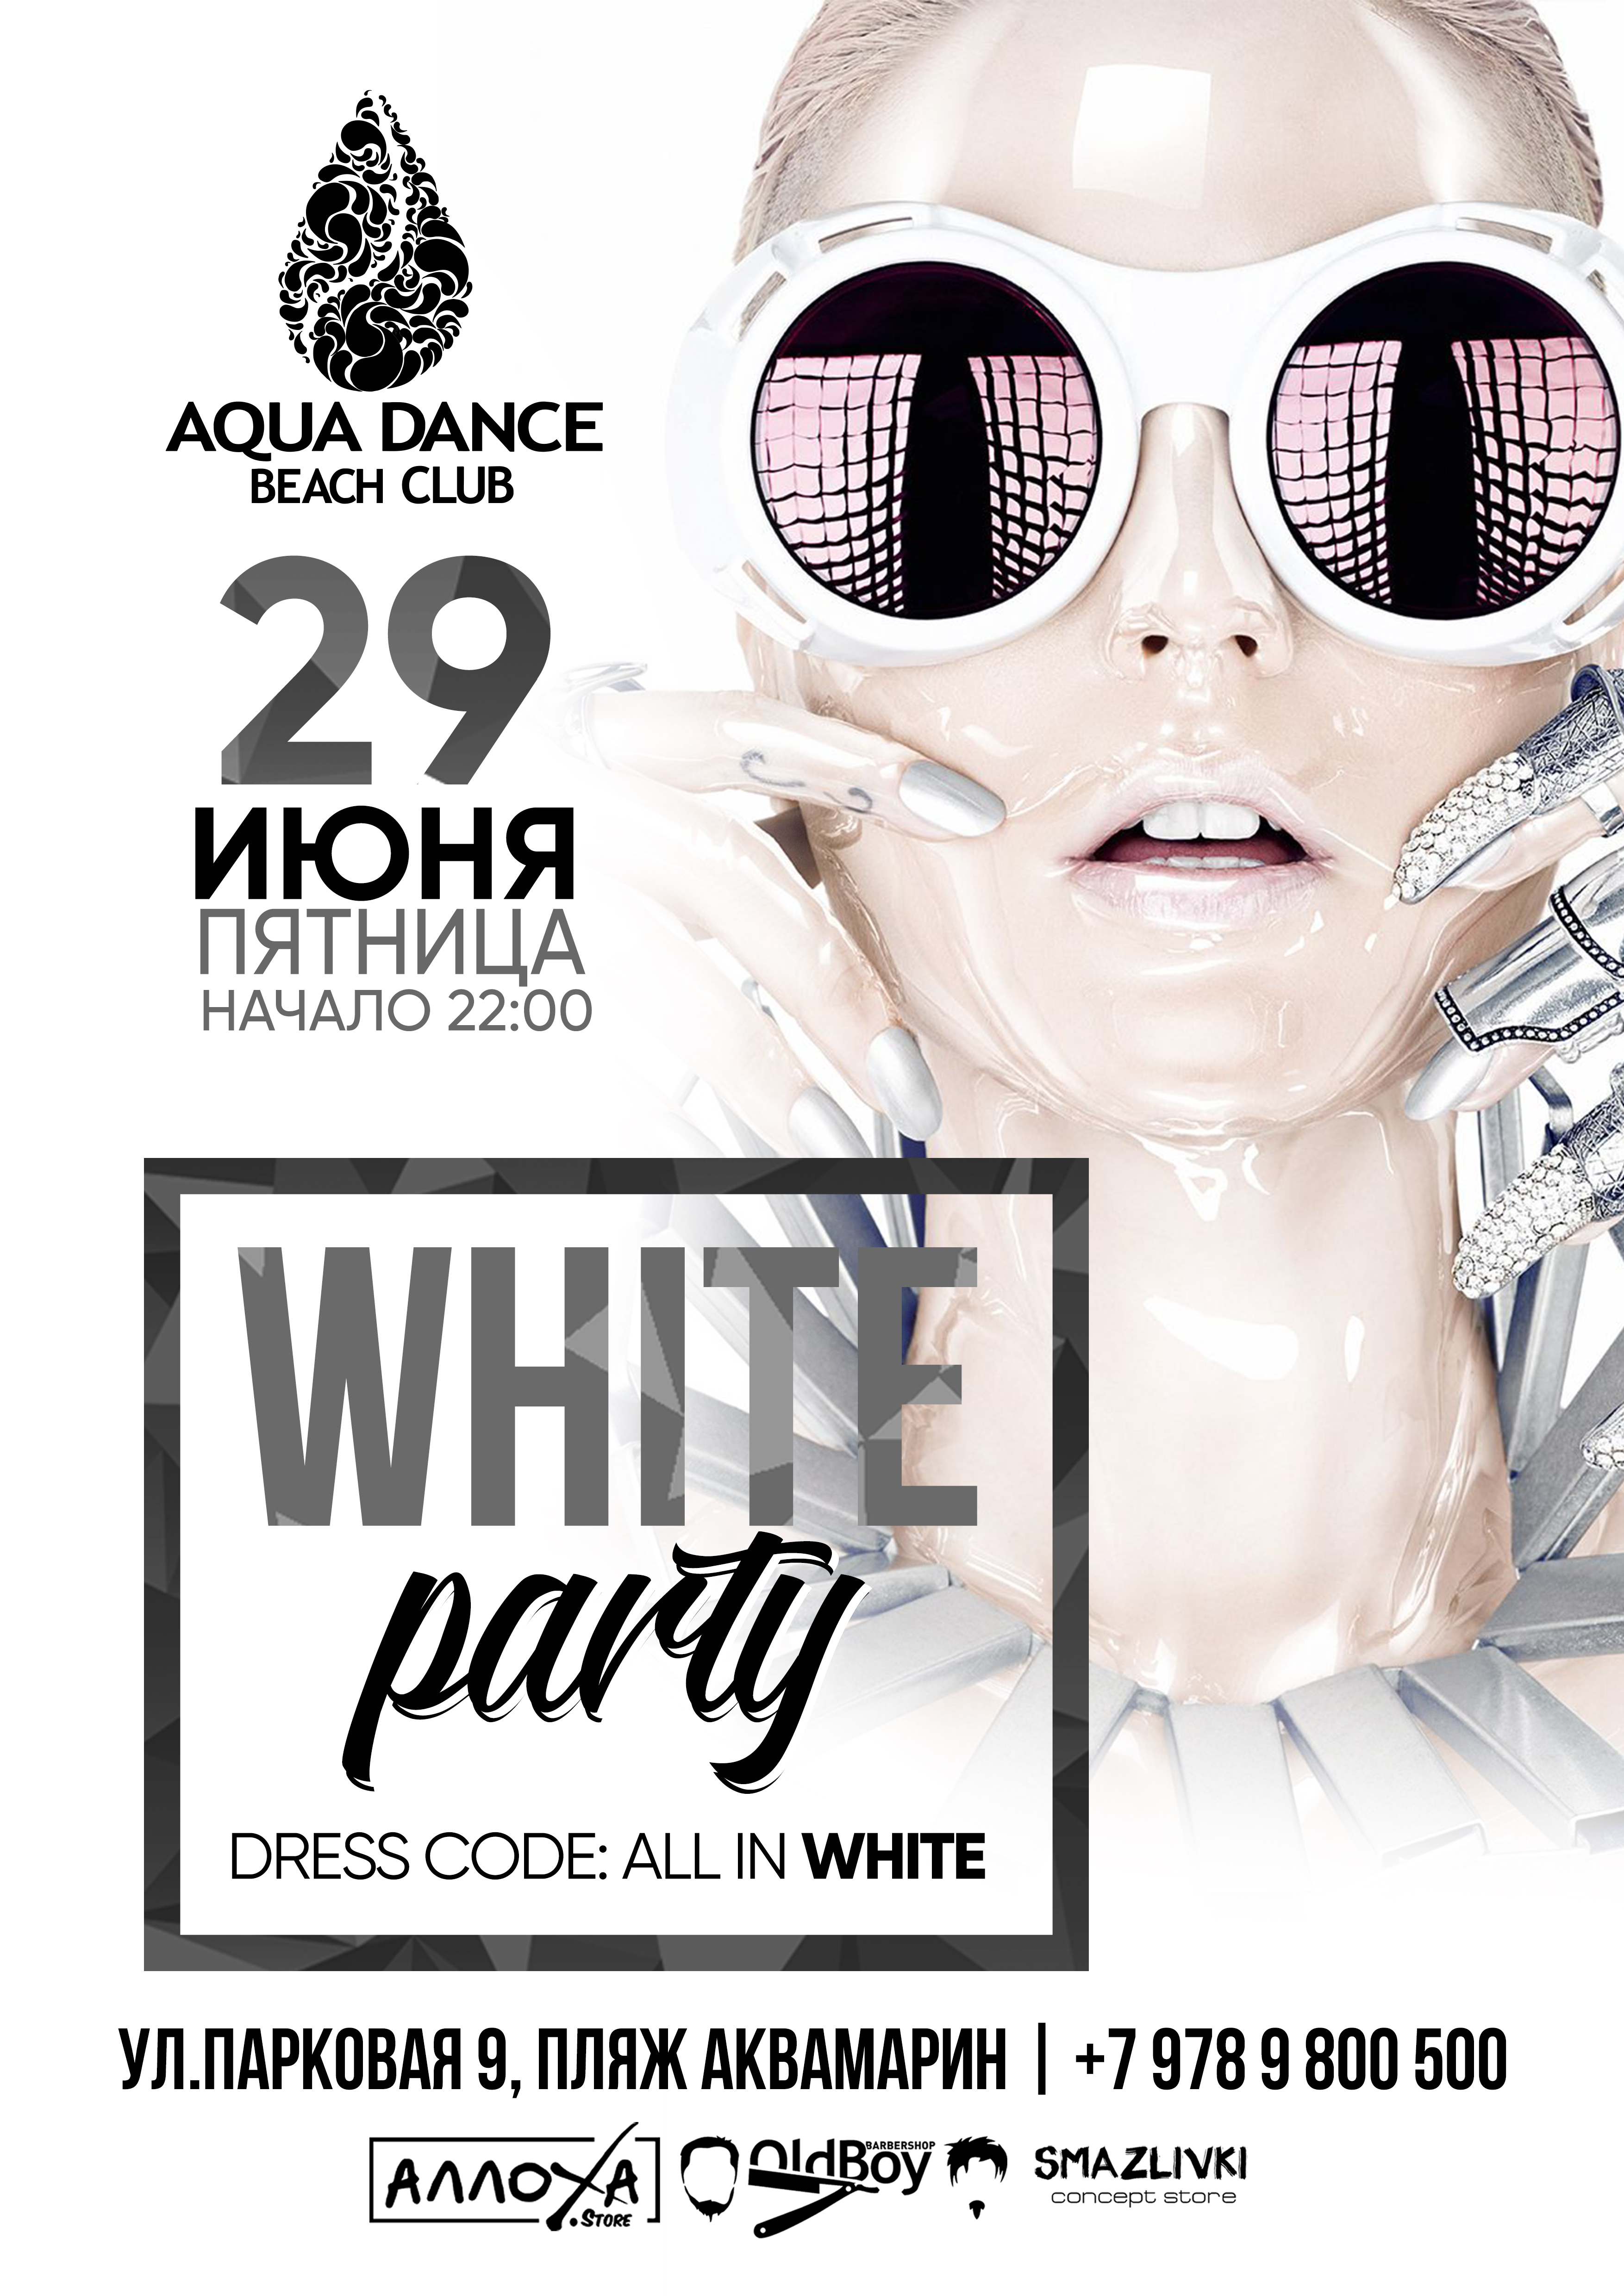 White Party в Aqua Dance Beach Club